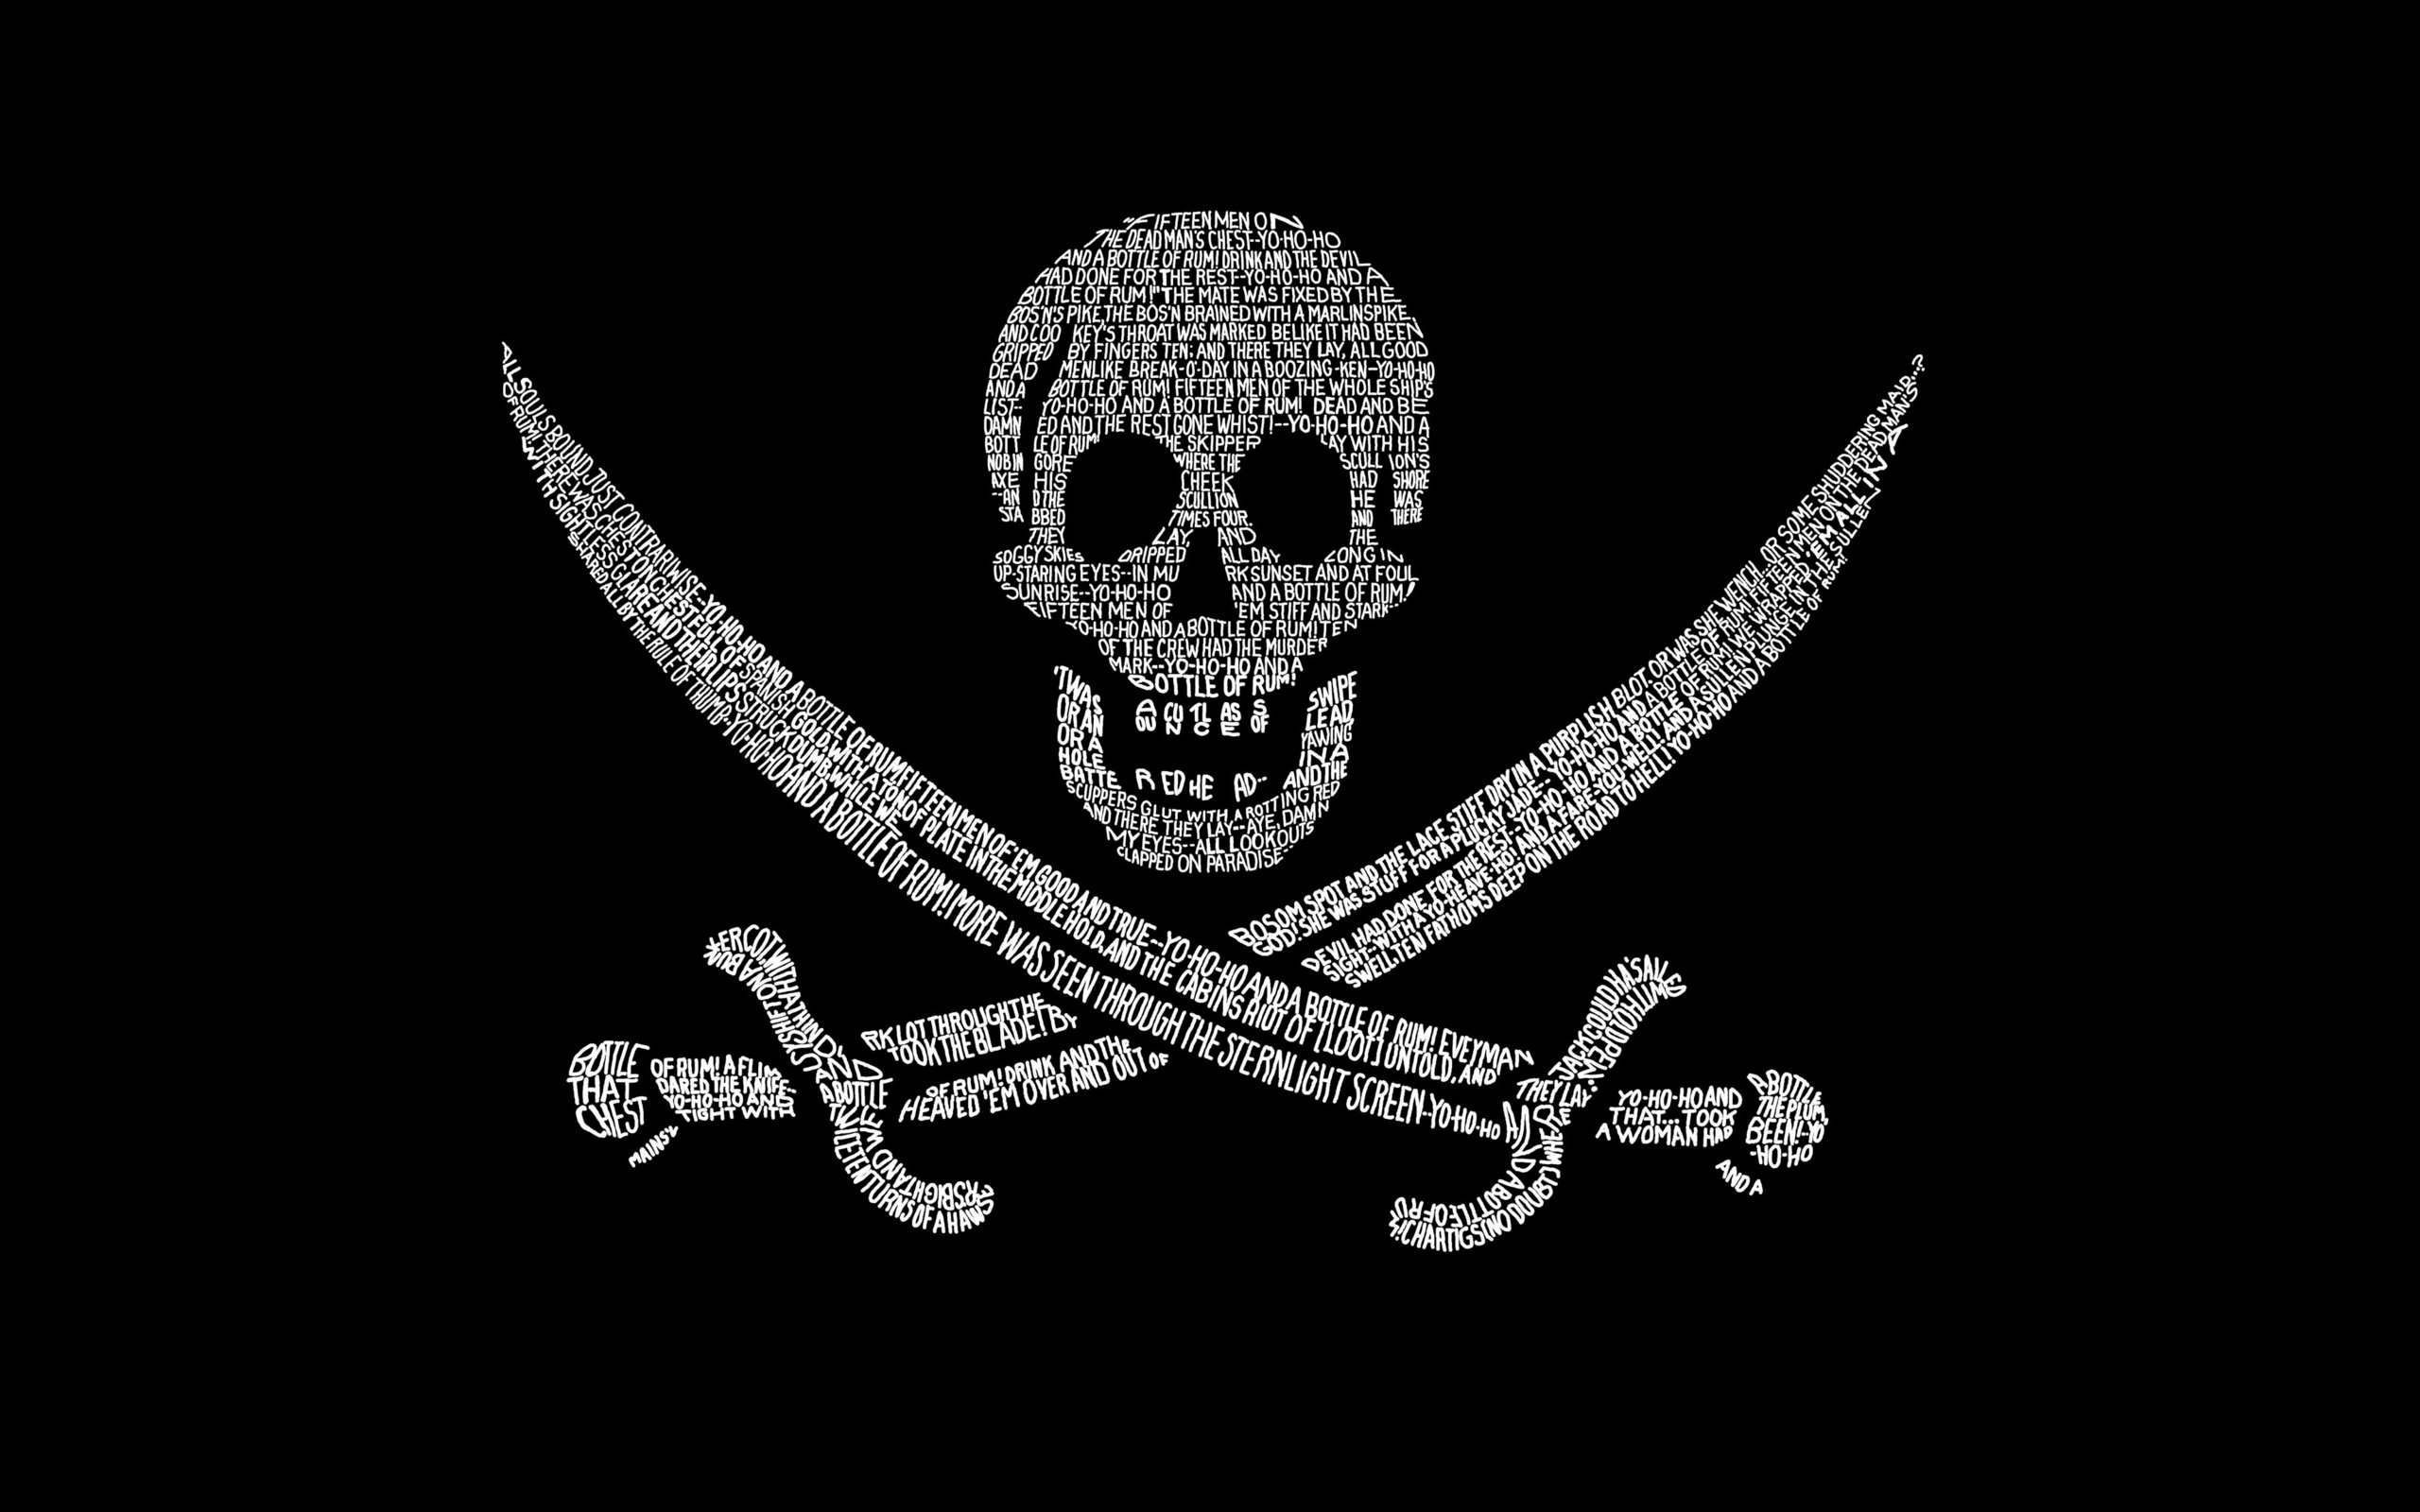 Флаг пирата черная борода